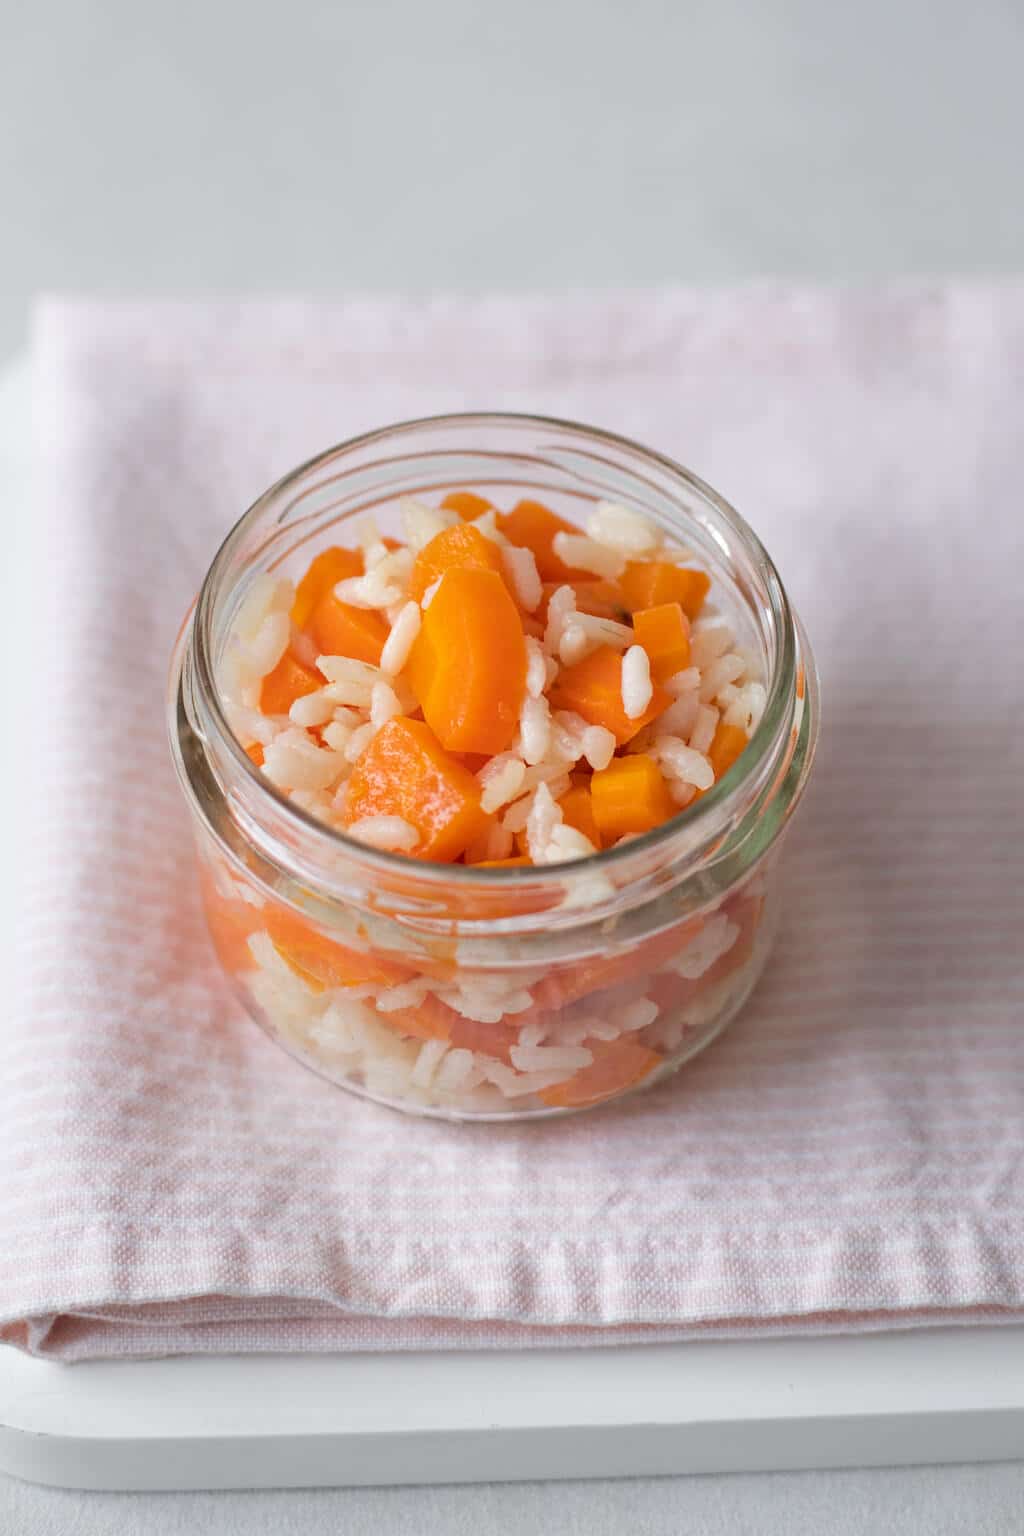 Risotto à la carotte